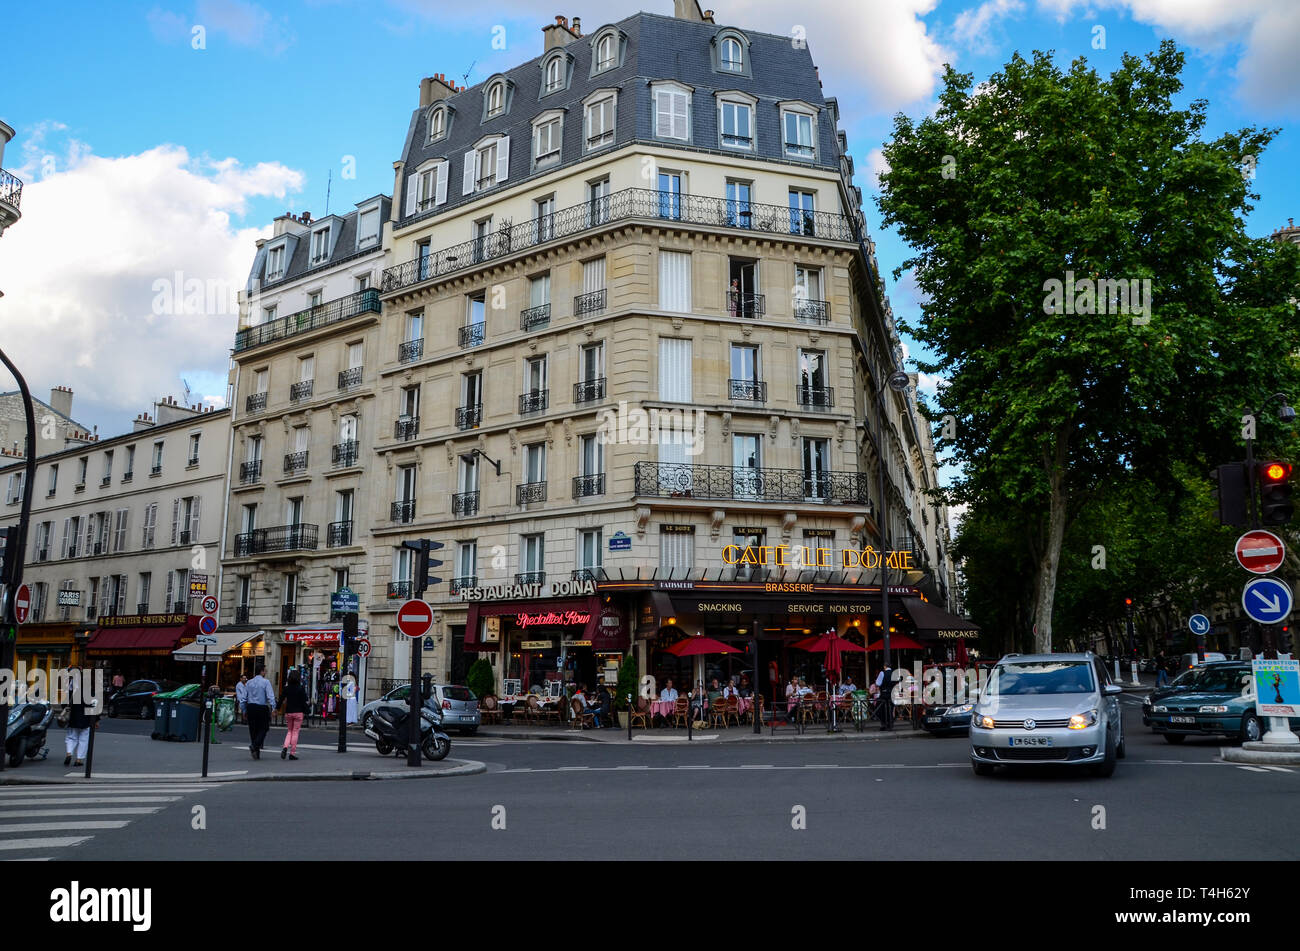 Café le Dome, Paris, France. Les clients manger à l'extérieur, de manger dehors en soirée, à la tombée de la nuit. Restaurant Doina. Trottoir. Personnes et de trafic Banque D'Images